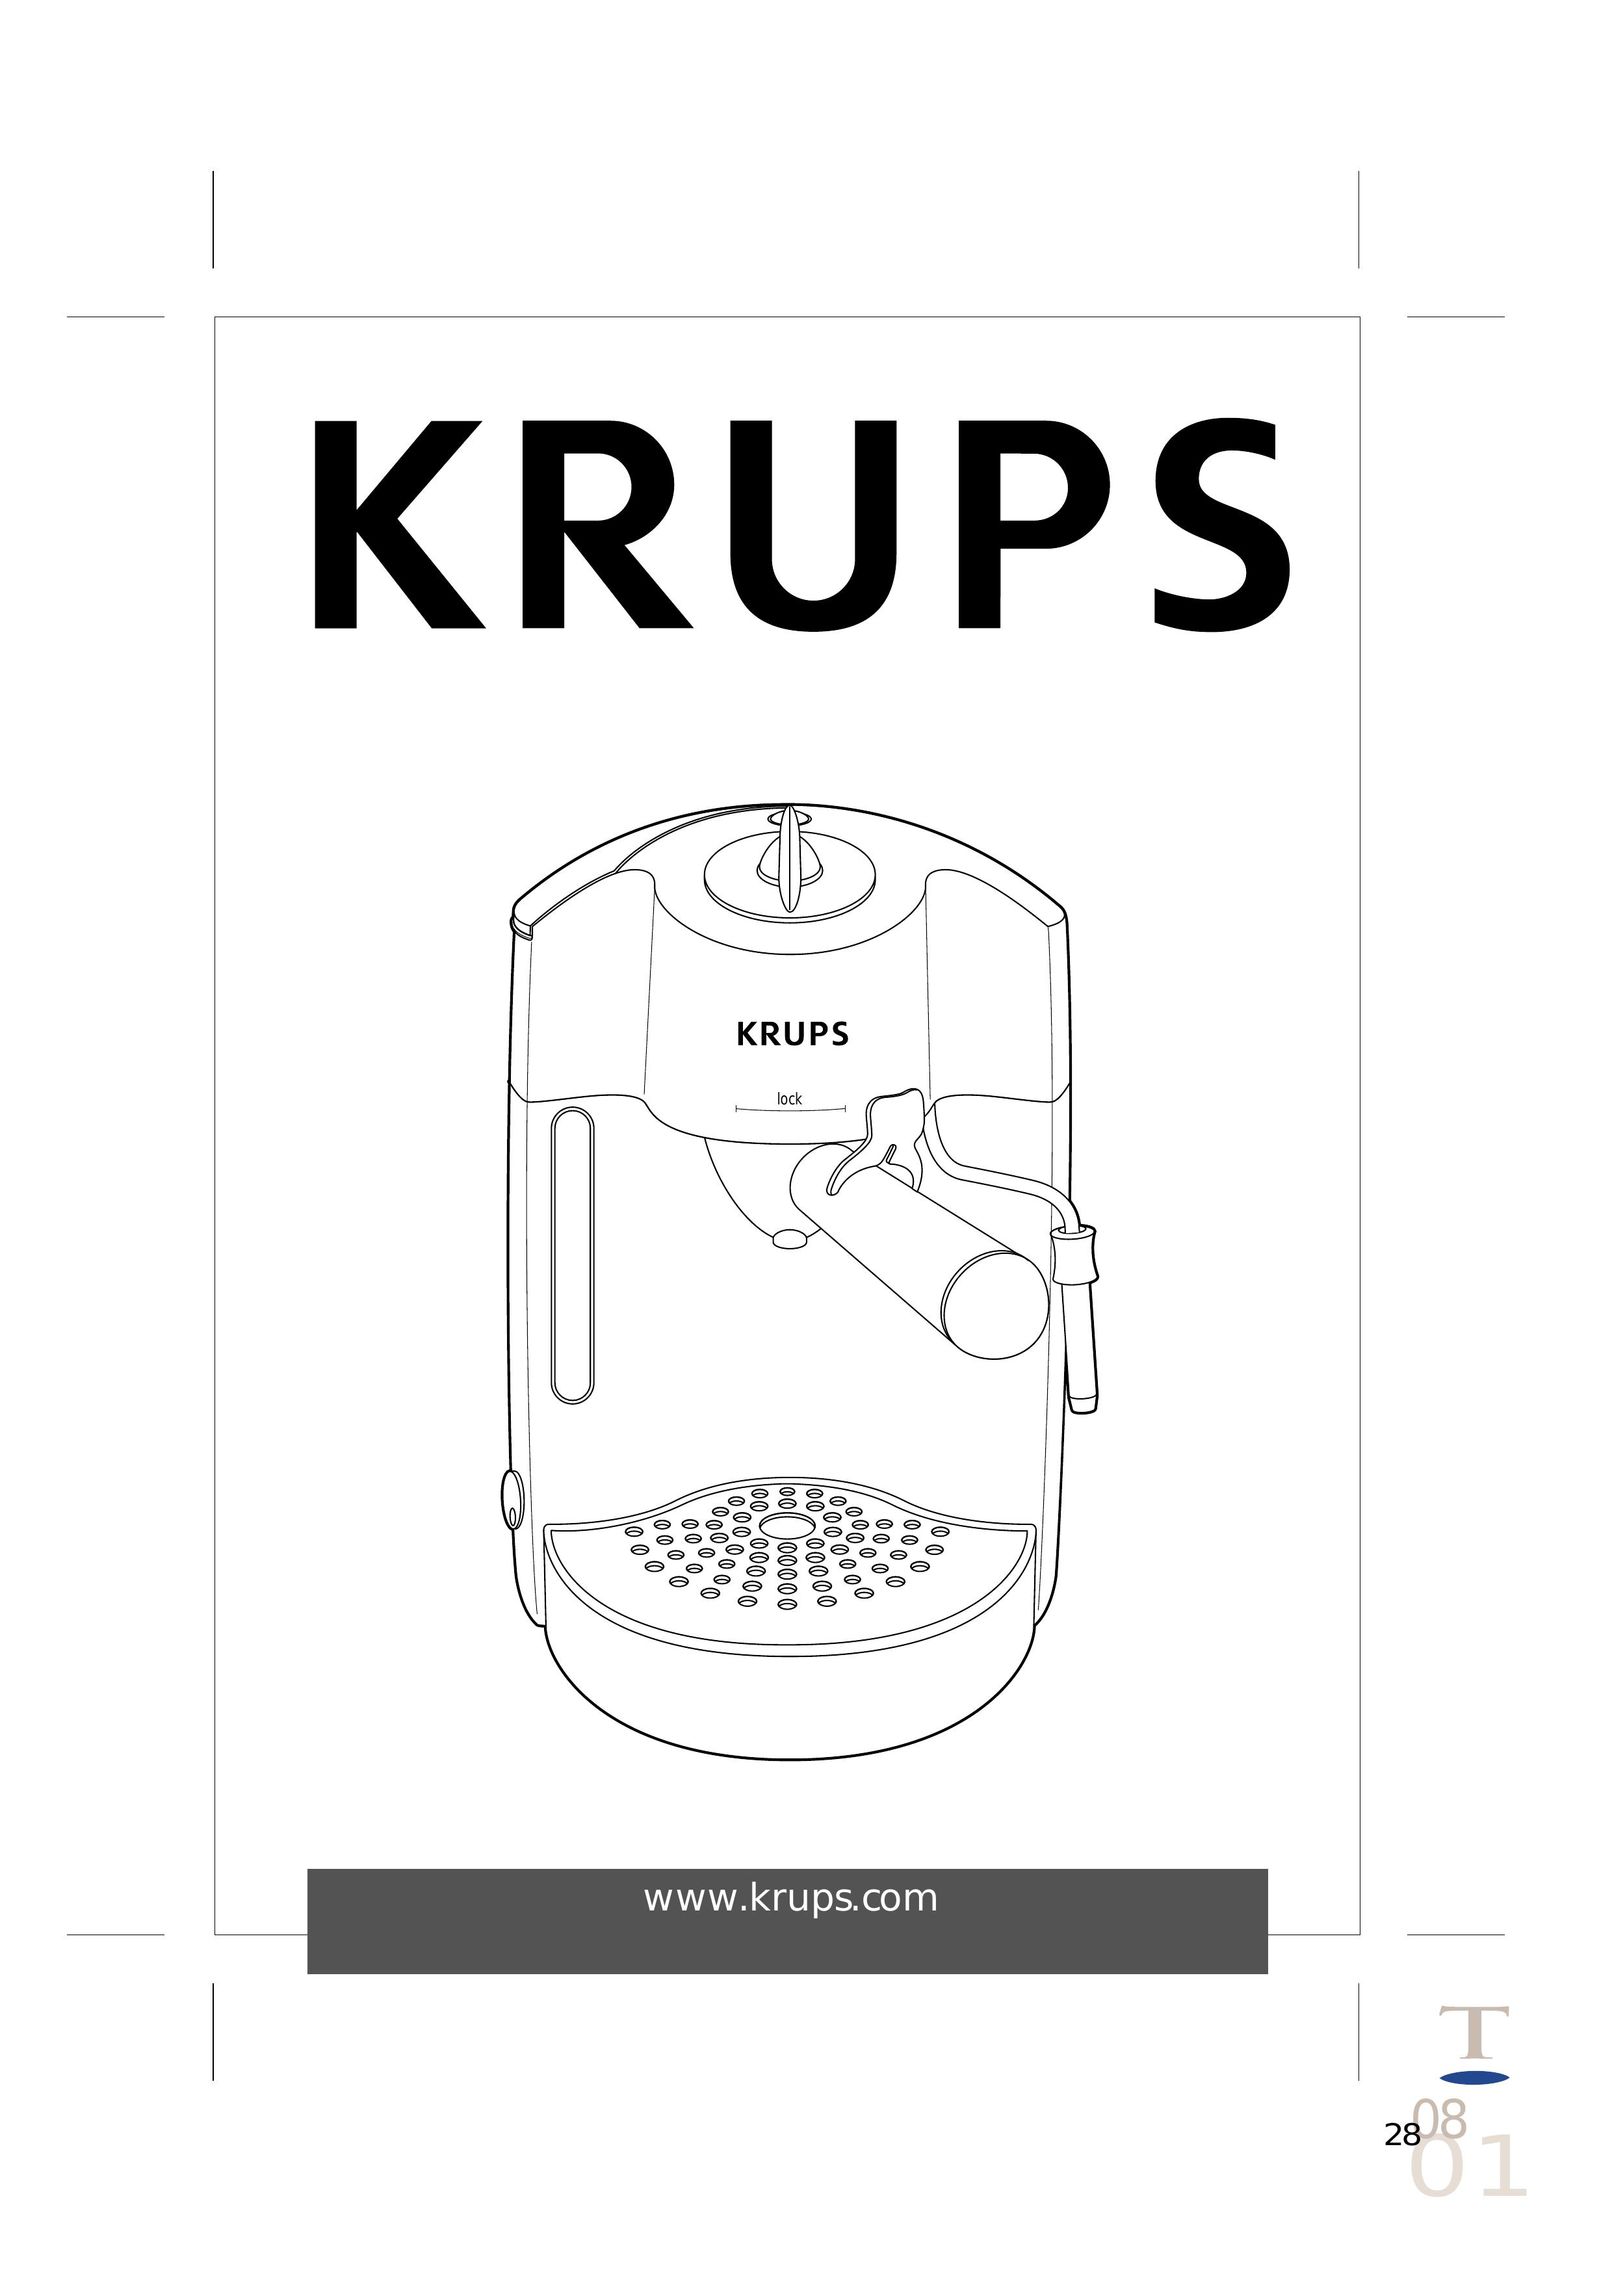 Krups FNP1 Espresso Maker User Manual